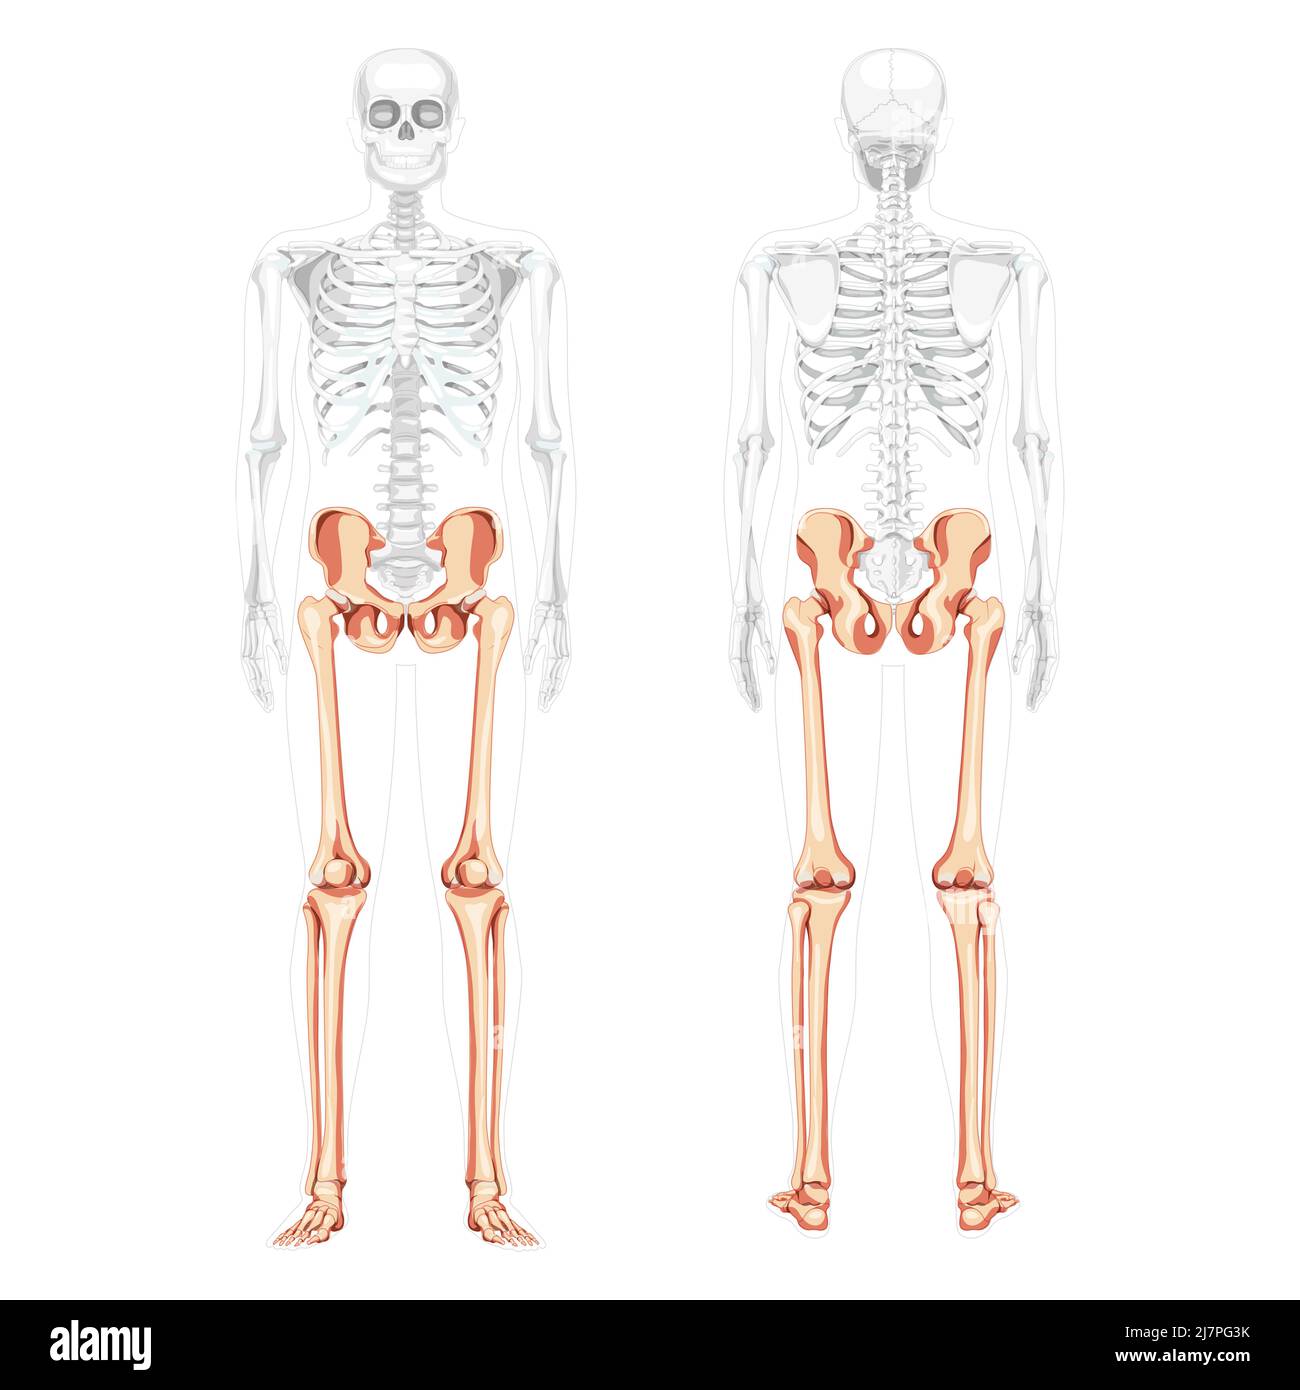 Scheletro arti inferiori Pelvi umano con gambe, cosce piedi, caviglie vista posteriore anteriore con corpo parzialmente trasparente. Immagine vettoriale di concetto piatto 3D anatomicamente corretta di isolato su sfondo bianco Illustrazione Vettoriale